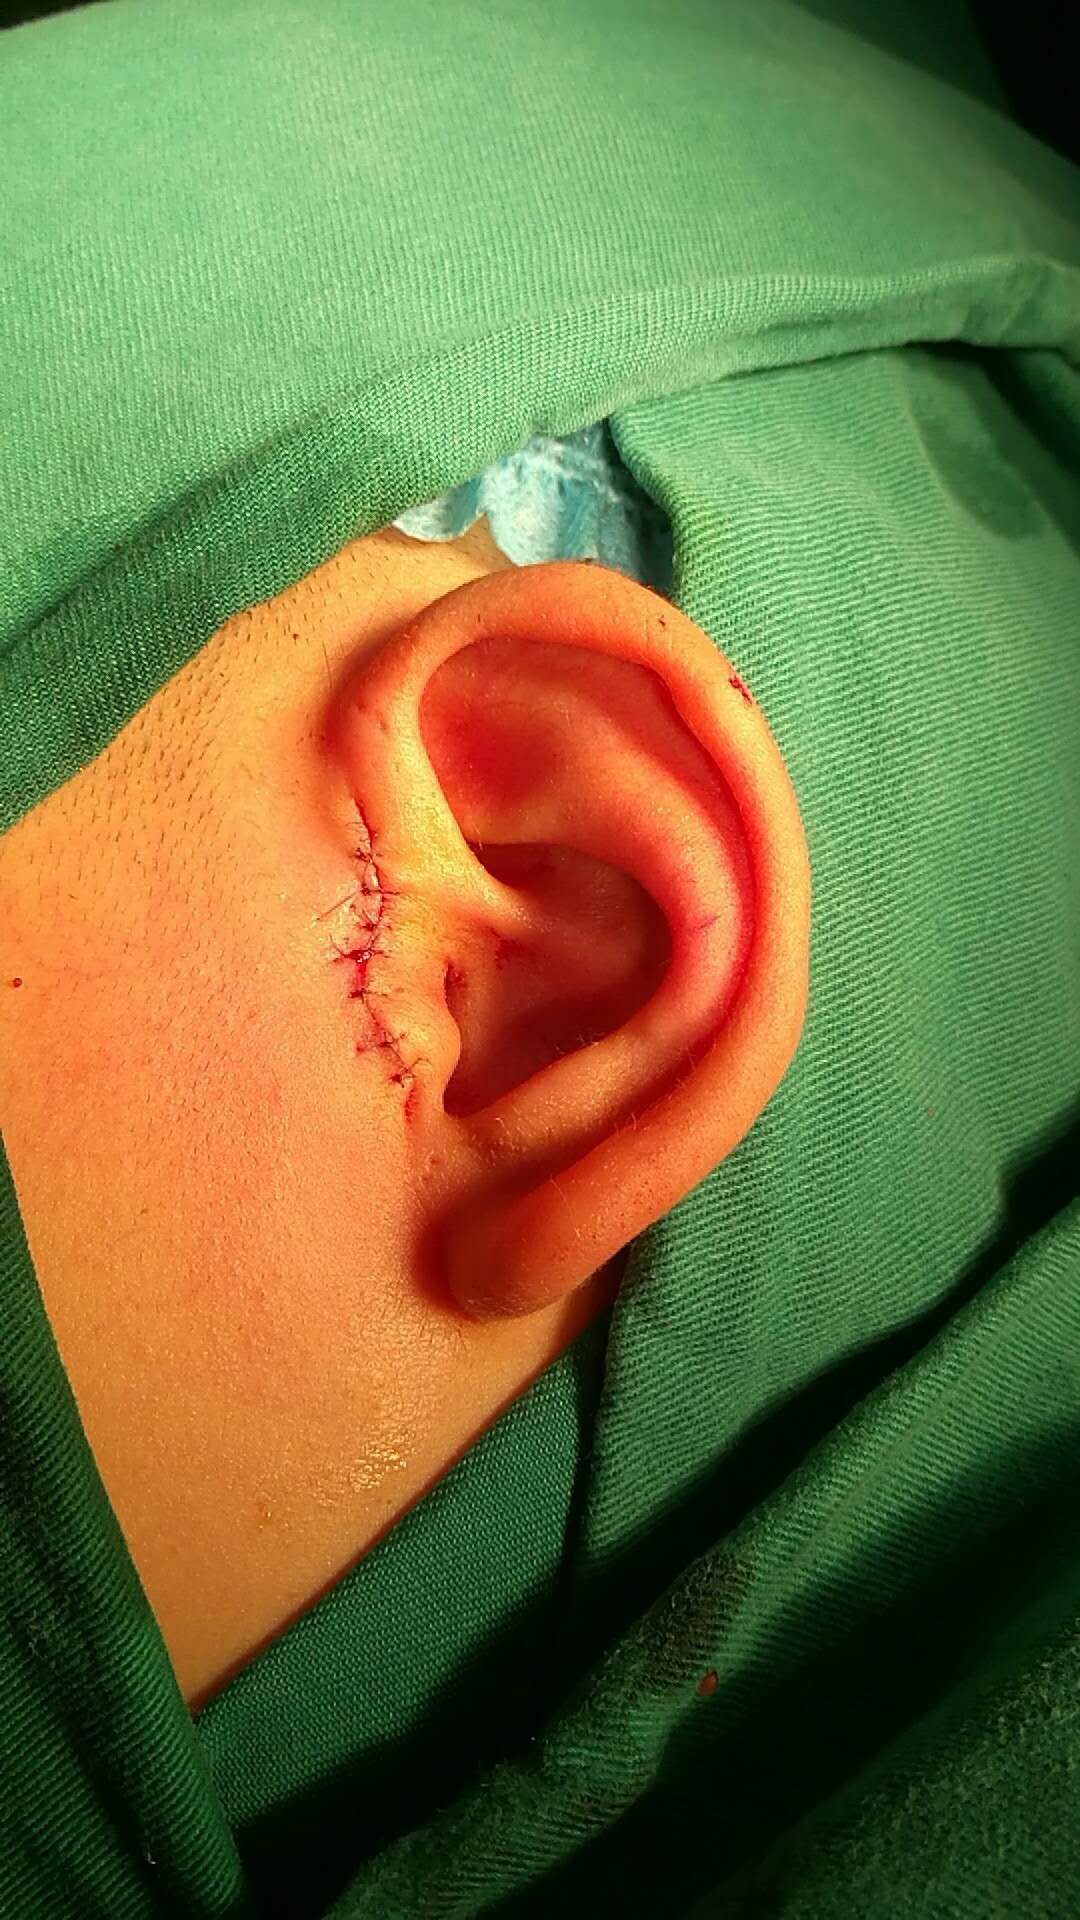 耳朵仓眼手术后照片图片